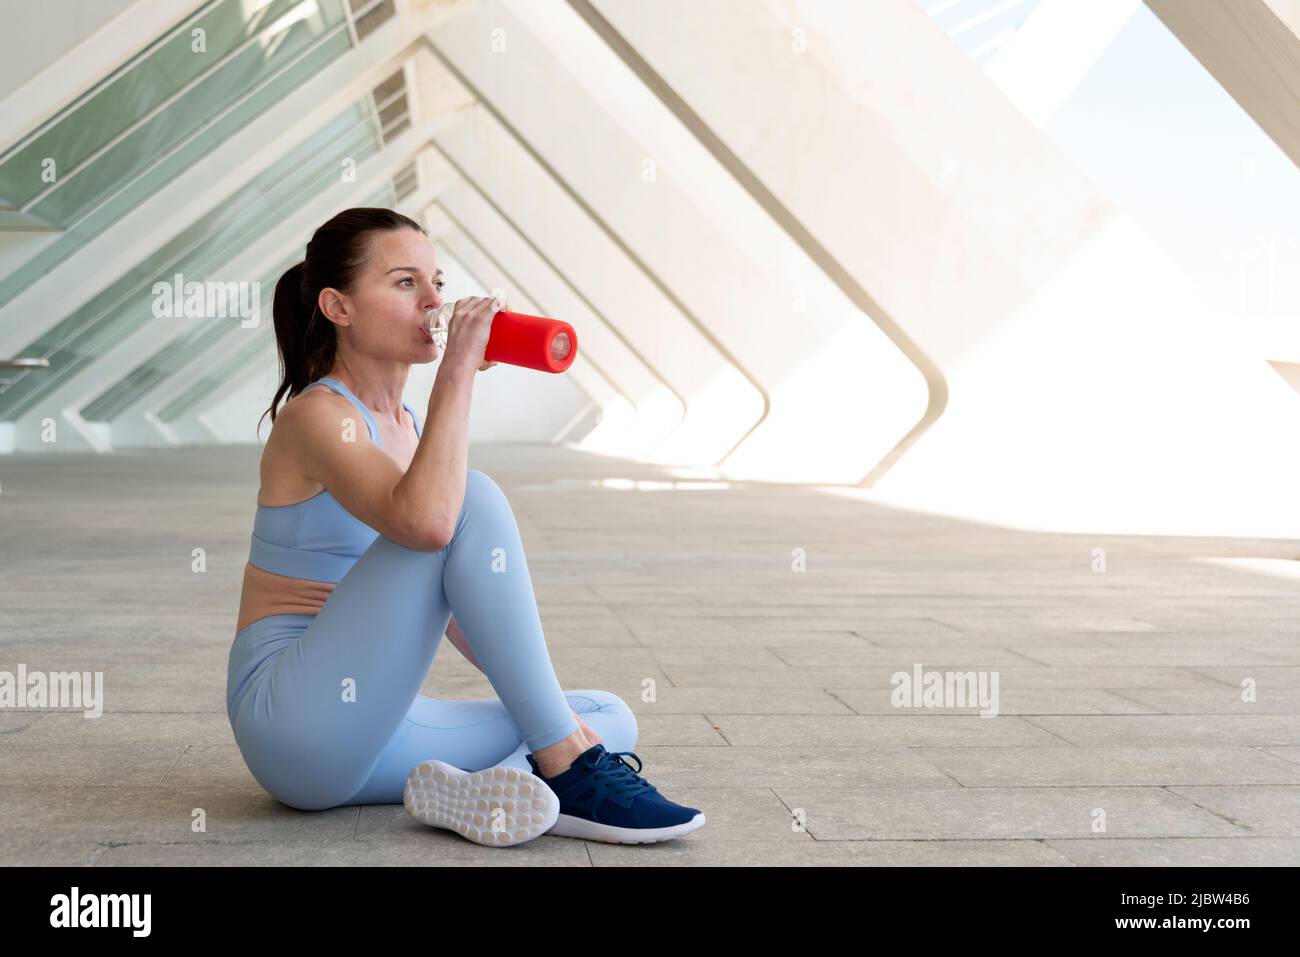 Mujer deportiva y en forma sentada bebiendo agua de una botella de vidrio después de hacer ejercicio o correr. Fondo urbano. Foto de stock